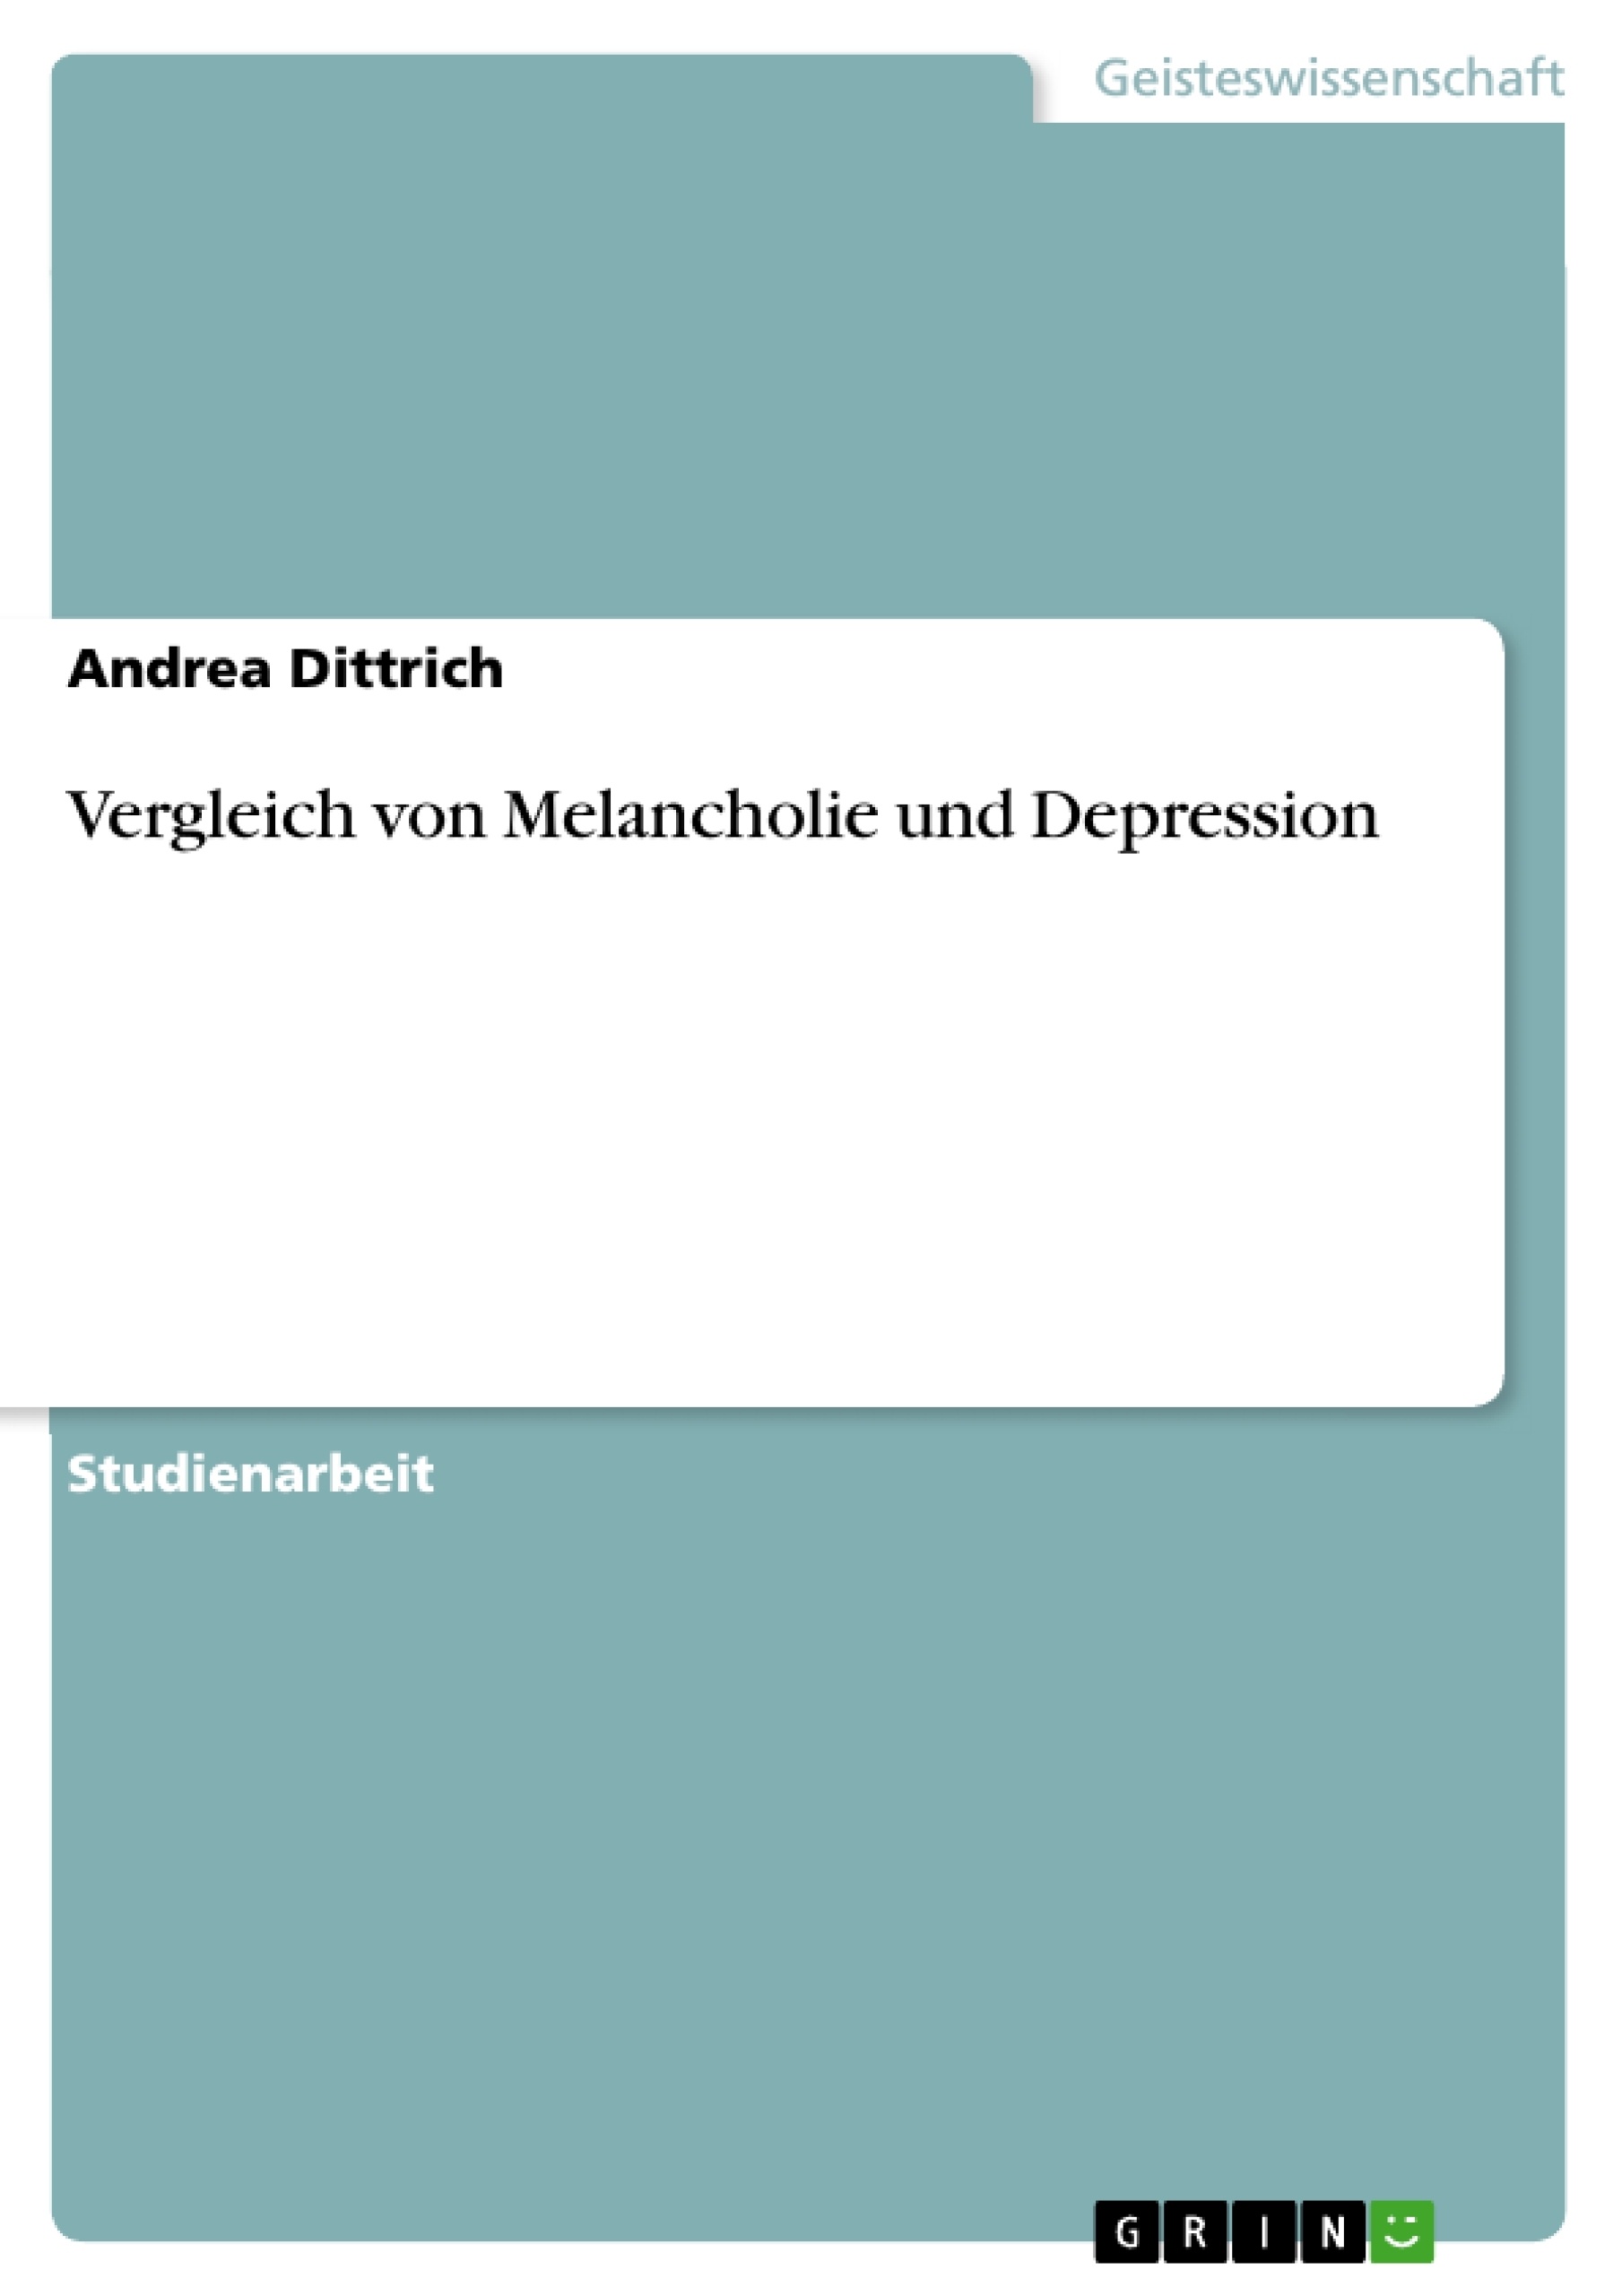 Title: Vergleich von Melancholie und Depression